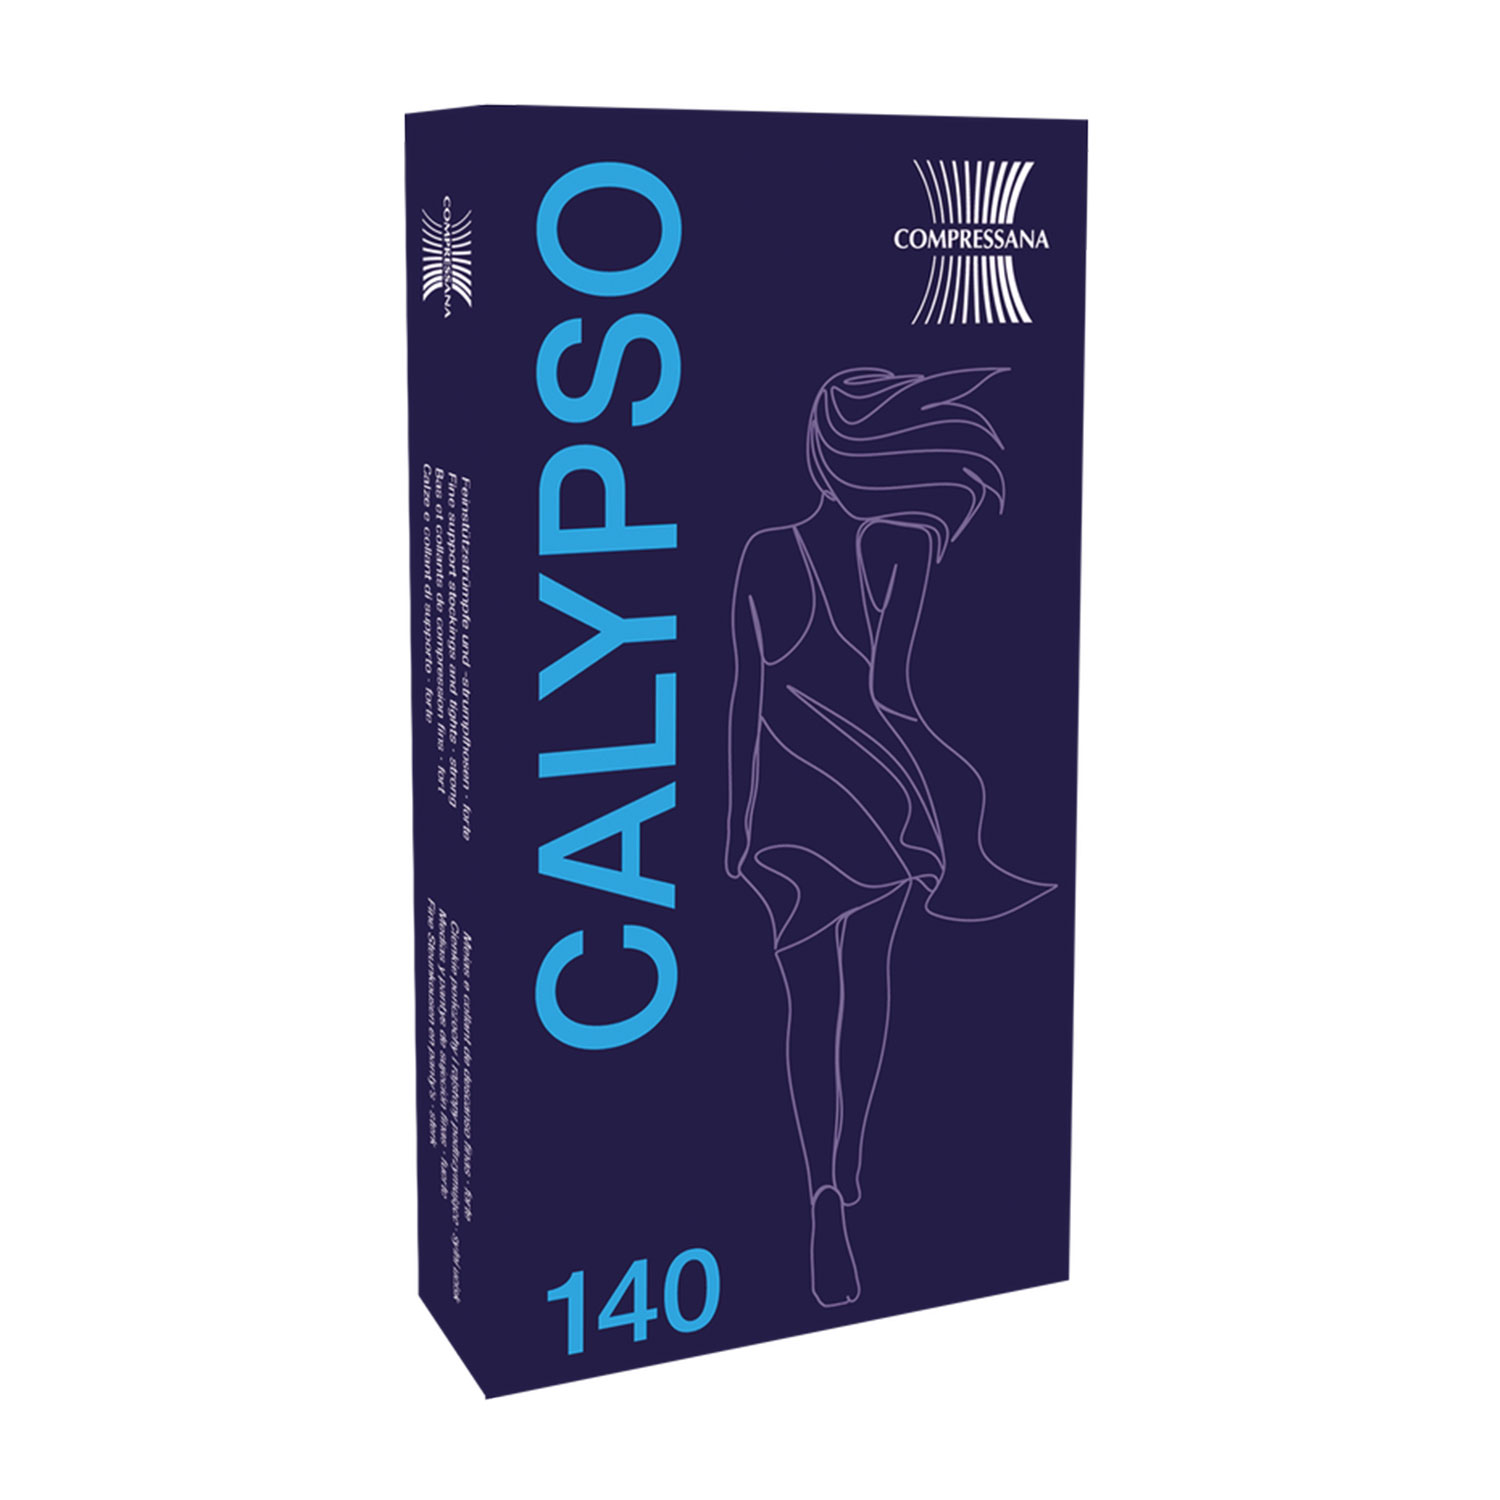 Kniestrümpfe - Fit für die Reise Calypso 140 den Compressana 9015 II (S) make-up